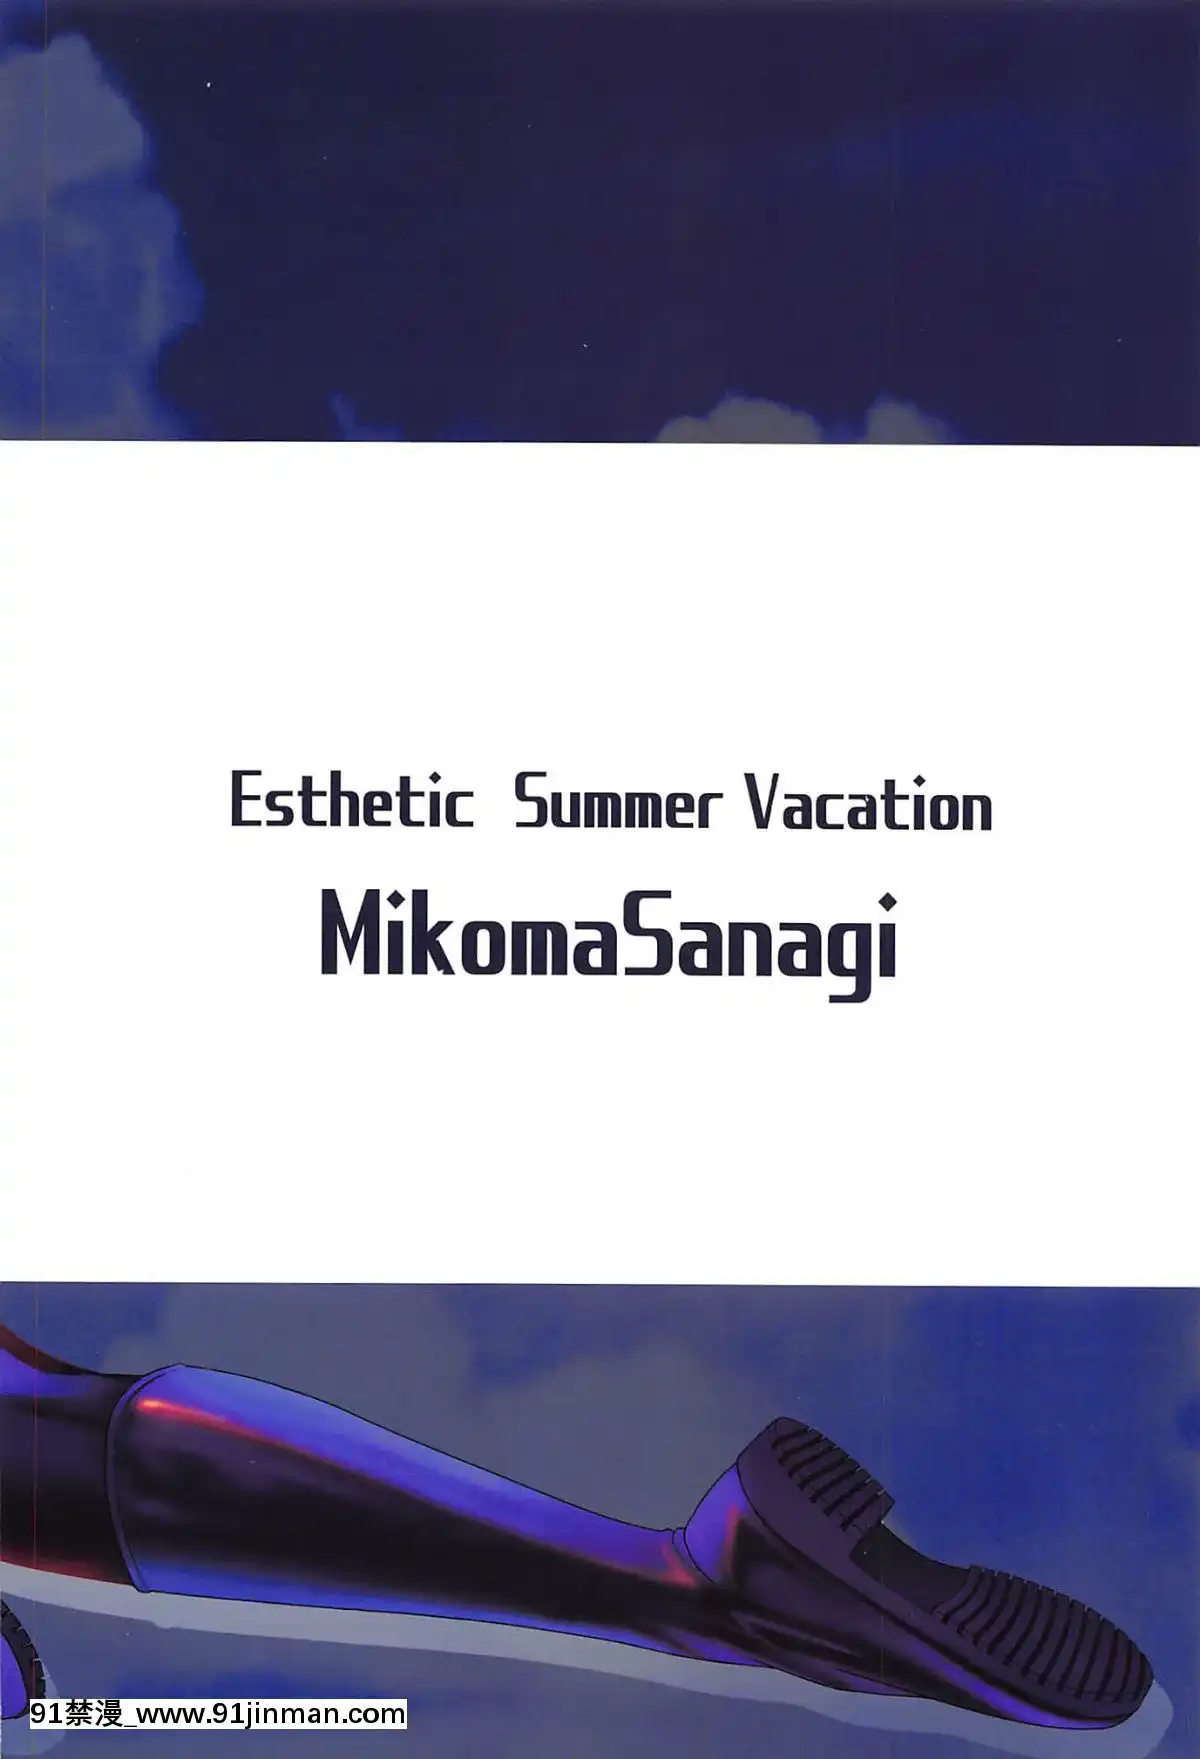 [Sun Prayer Trung] (C96) [Izumiya (Mikan Sanaki)] Kỳ nghỉ hè giả tạo (Fate GrandOrder)【hình ảnh truyện tranh hài】